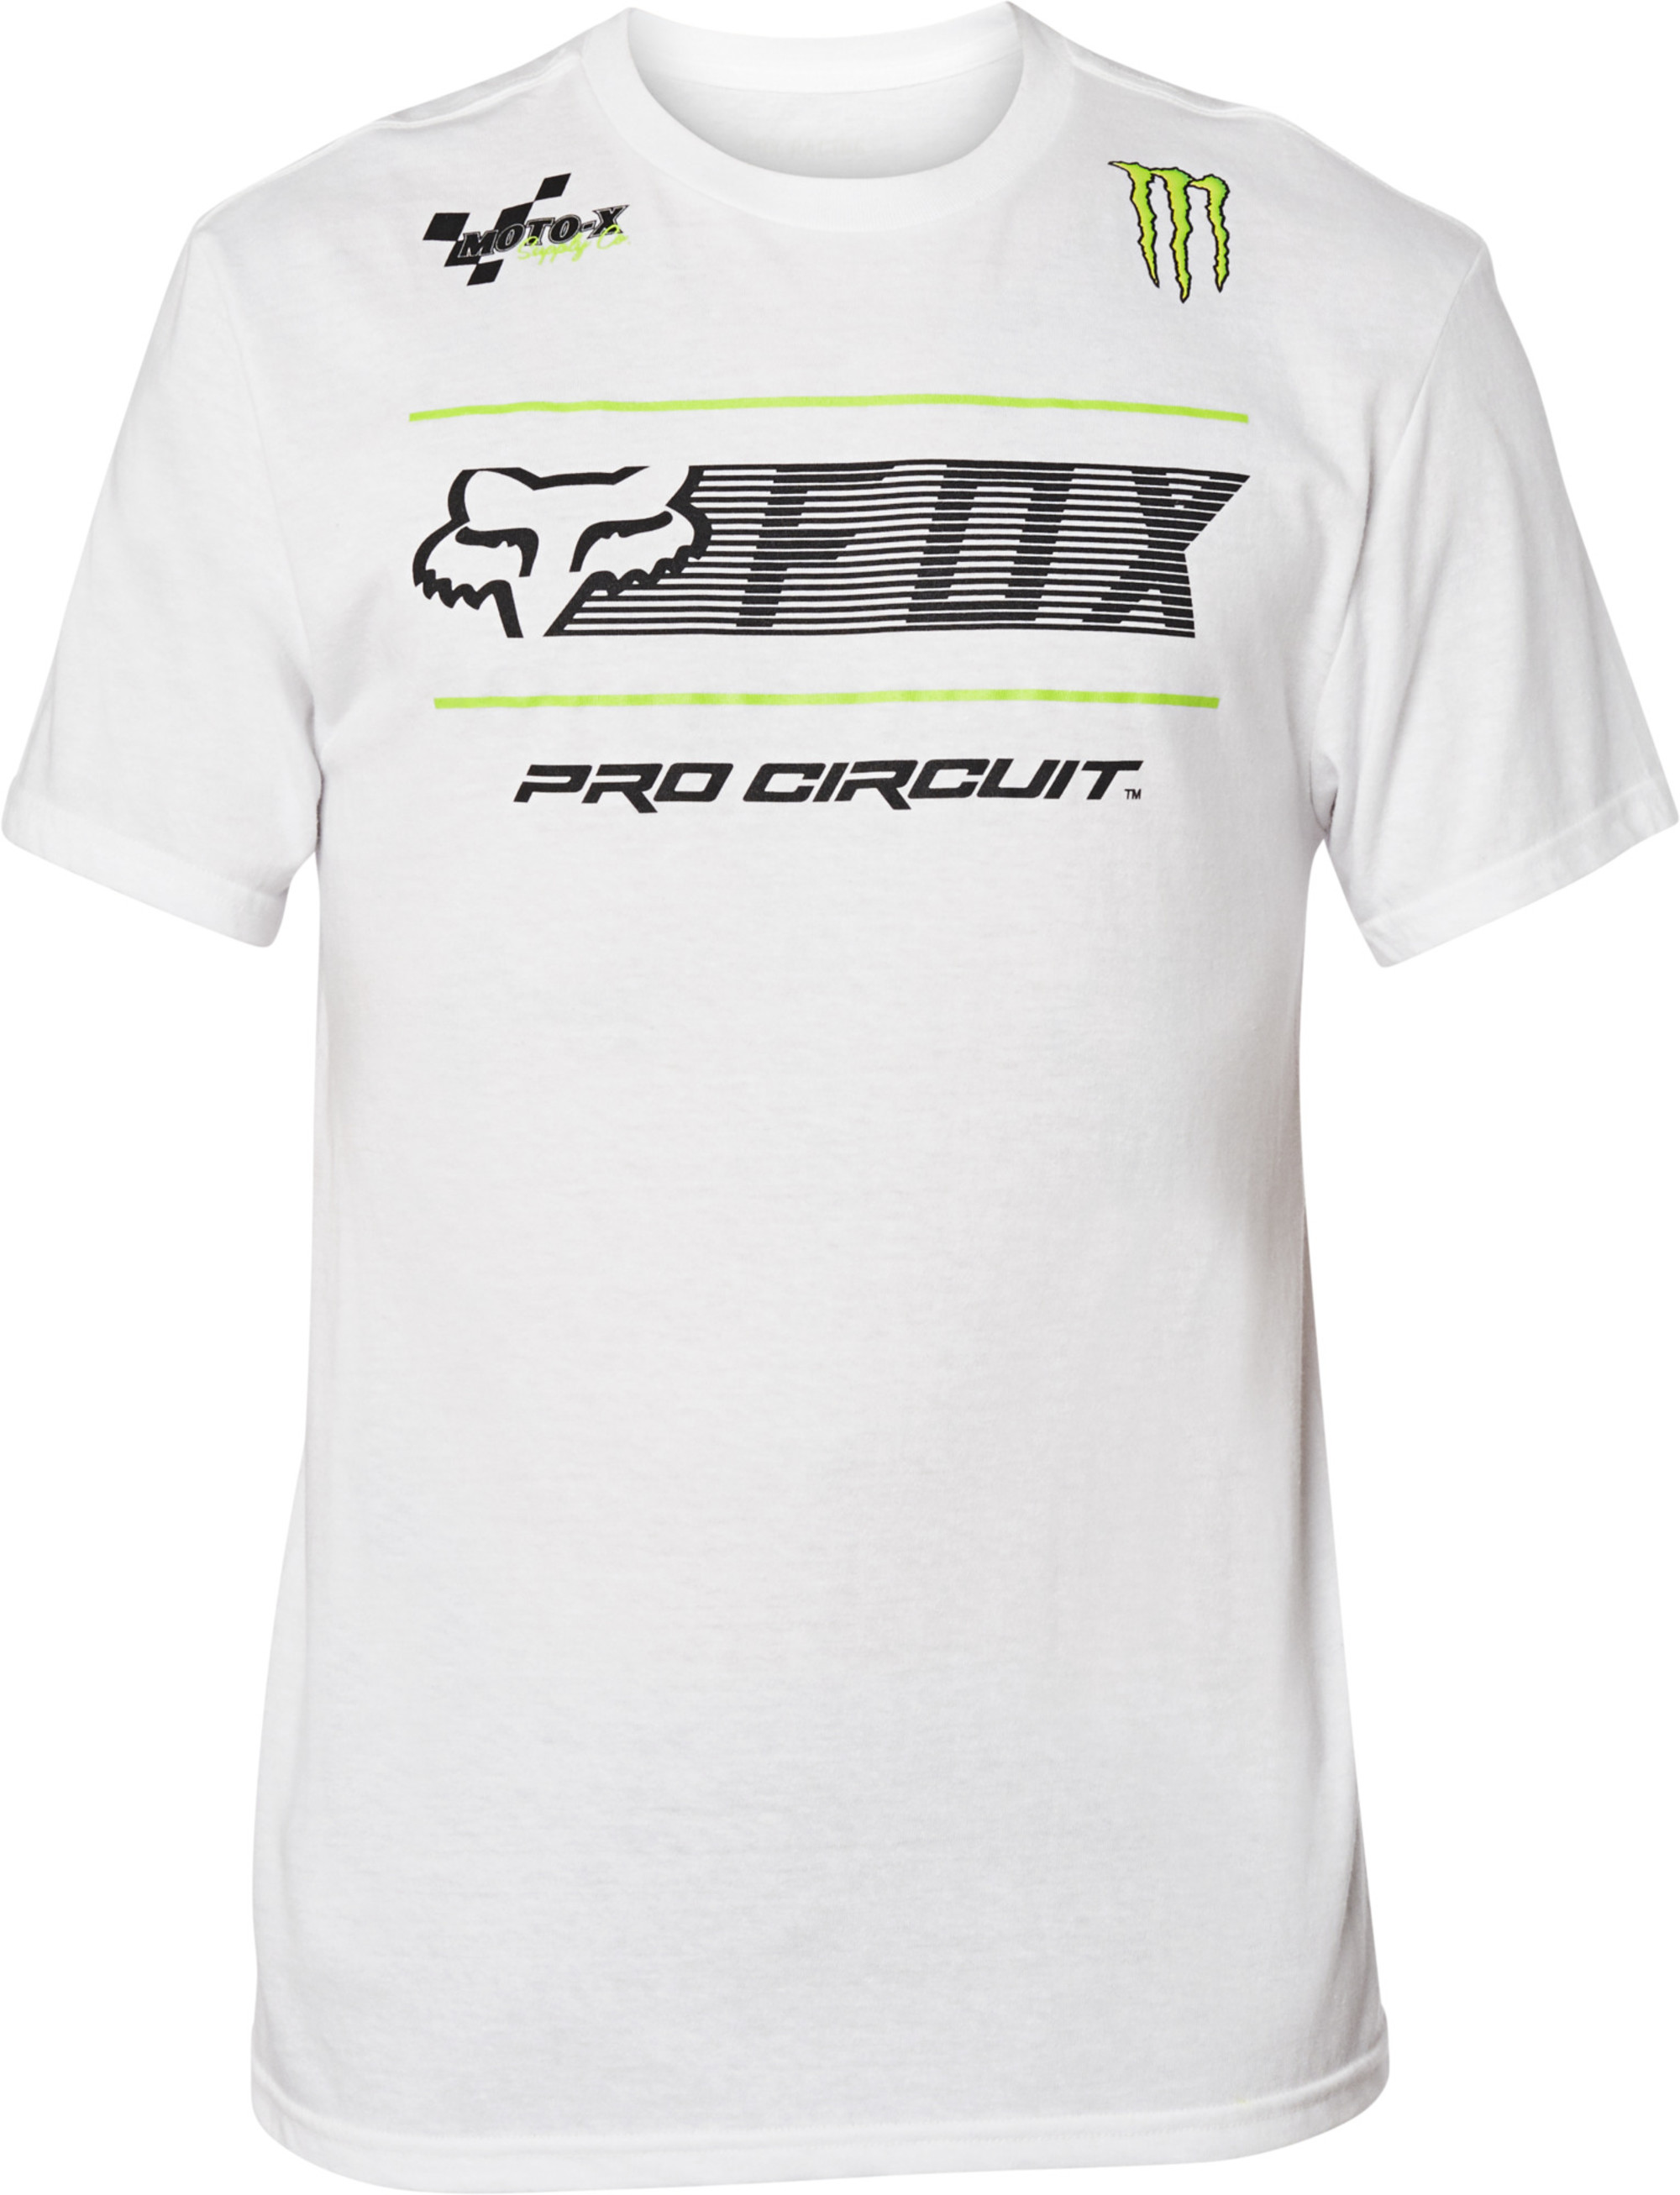 fox racing t-shirt shirts for men pro circuit